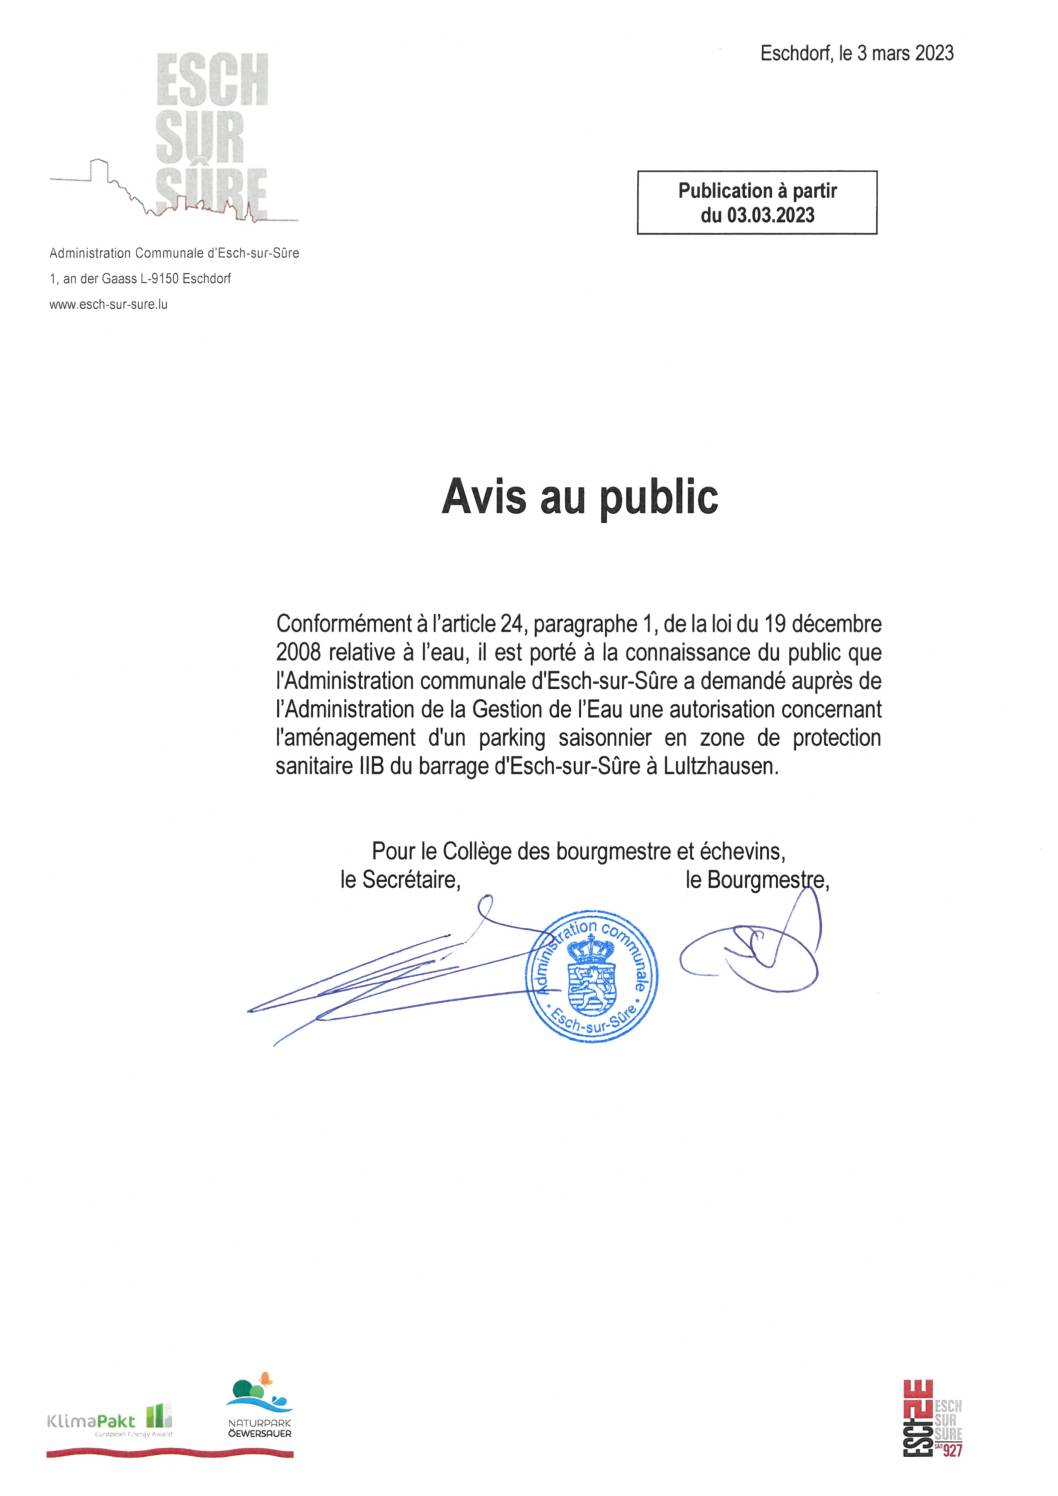 2023.03.03_Demande d'autorisation concernant l'aménagement d'un parking saisonnier en zone de protection sanitaire IIB du barrage d'Esch-sur-Sûre à Lultzhausen